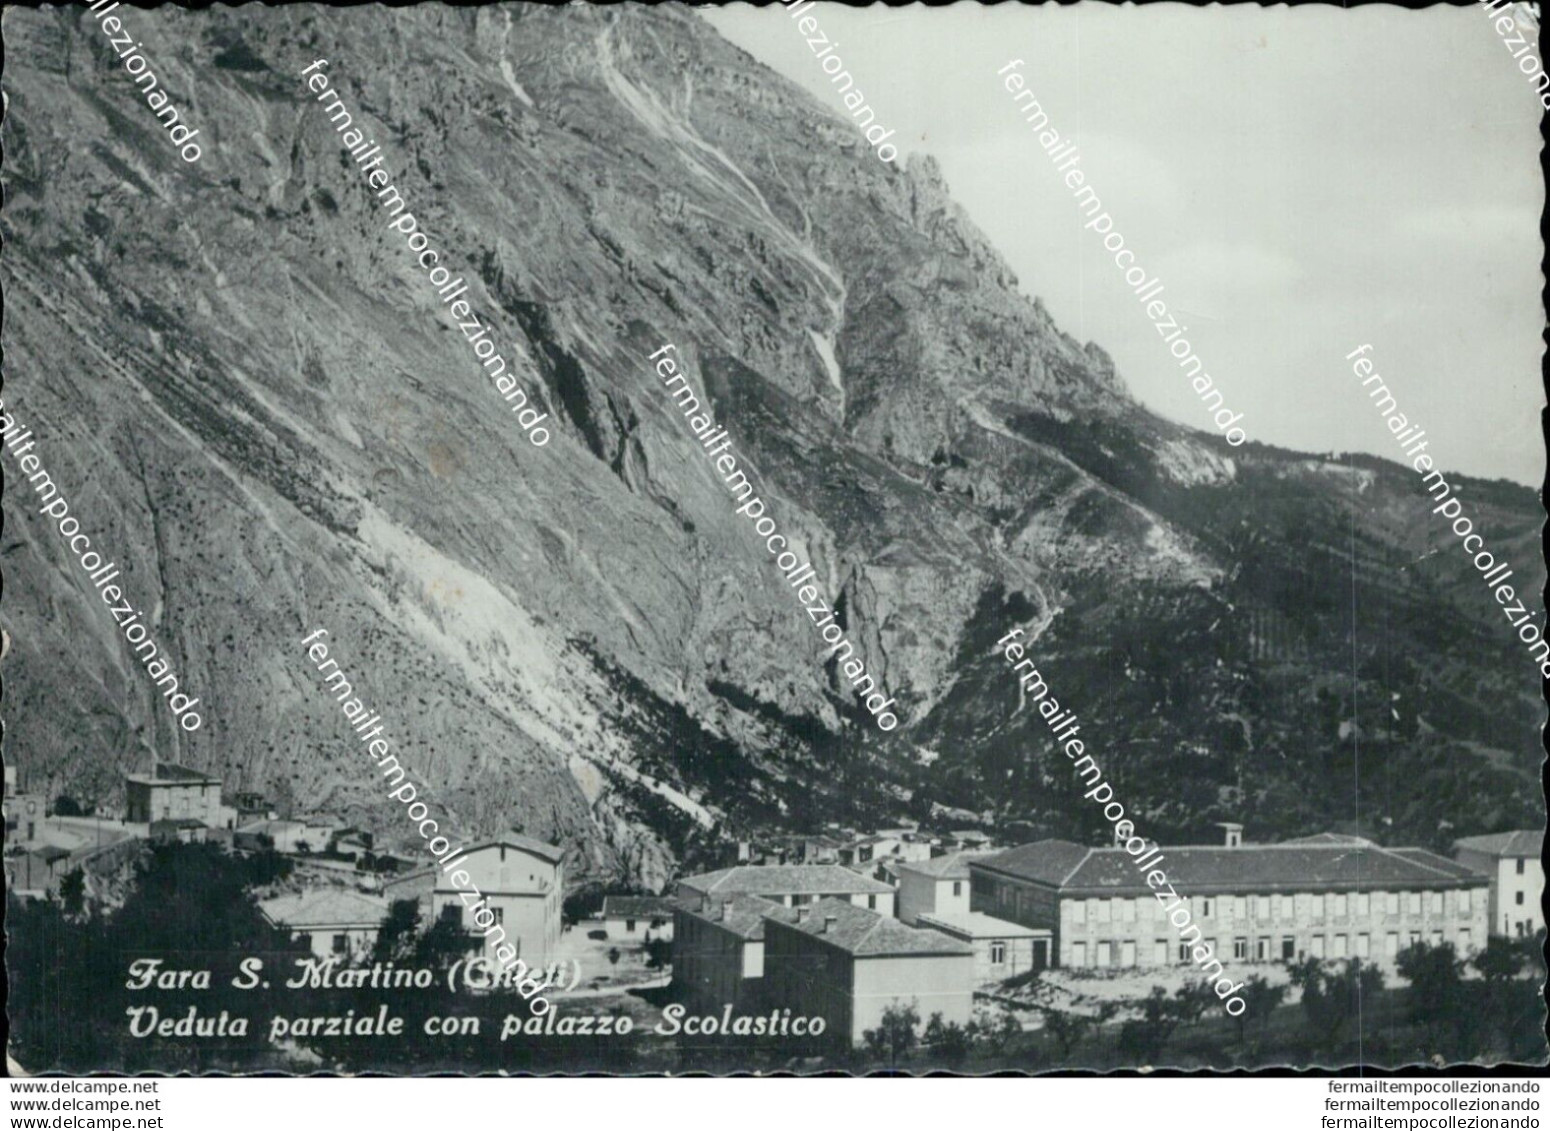 Ap489 Cartolina Fara S.martino Veduta Parziale Con Palazzo Scolastico Chieti - Chieti